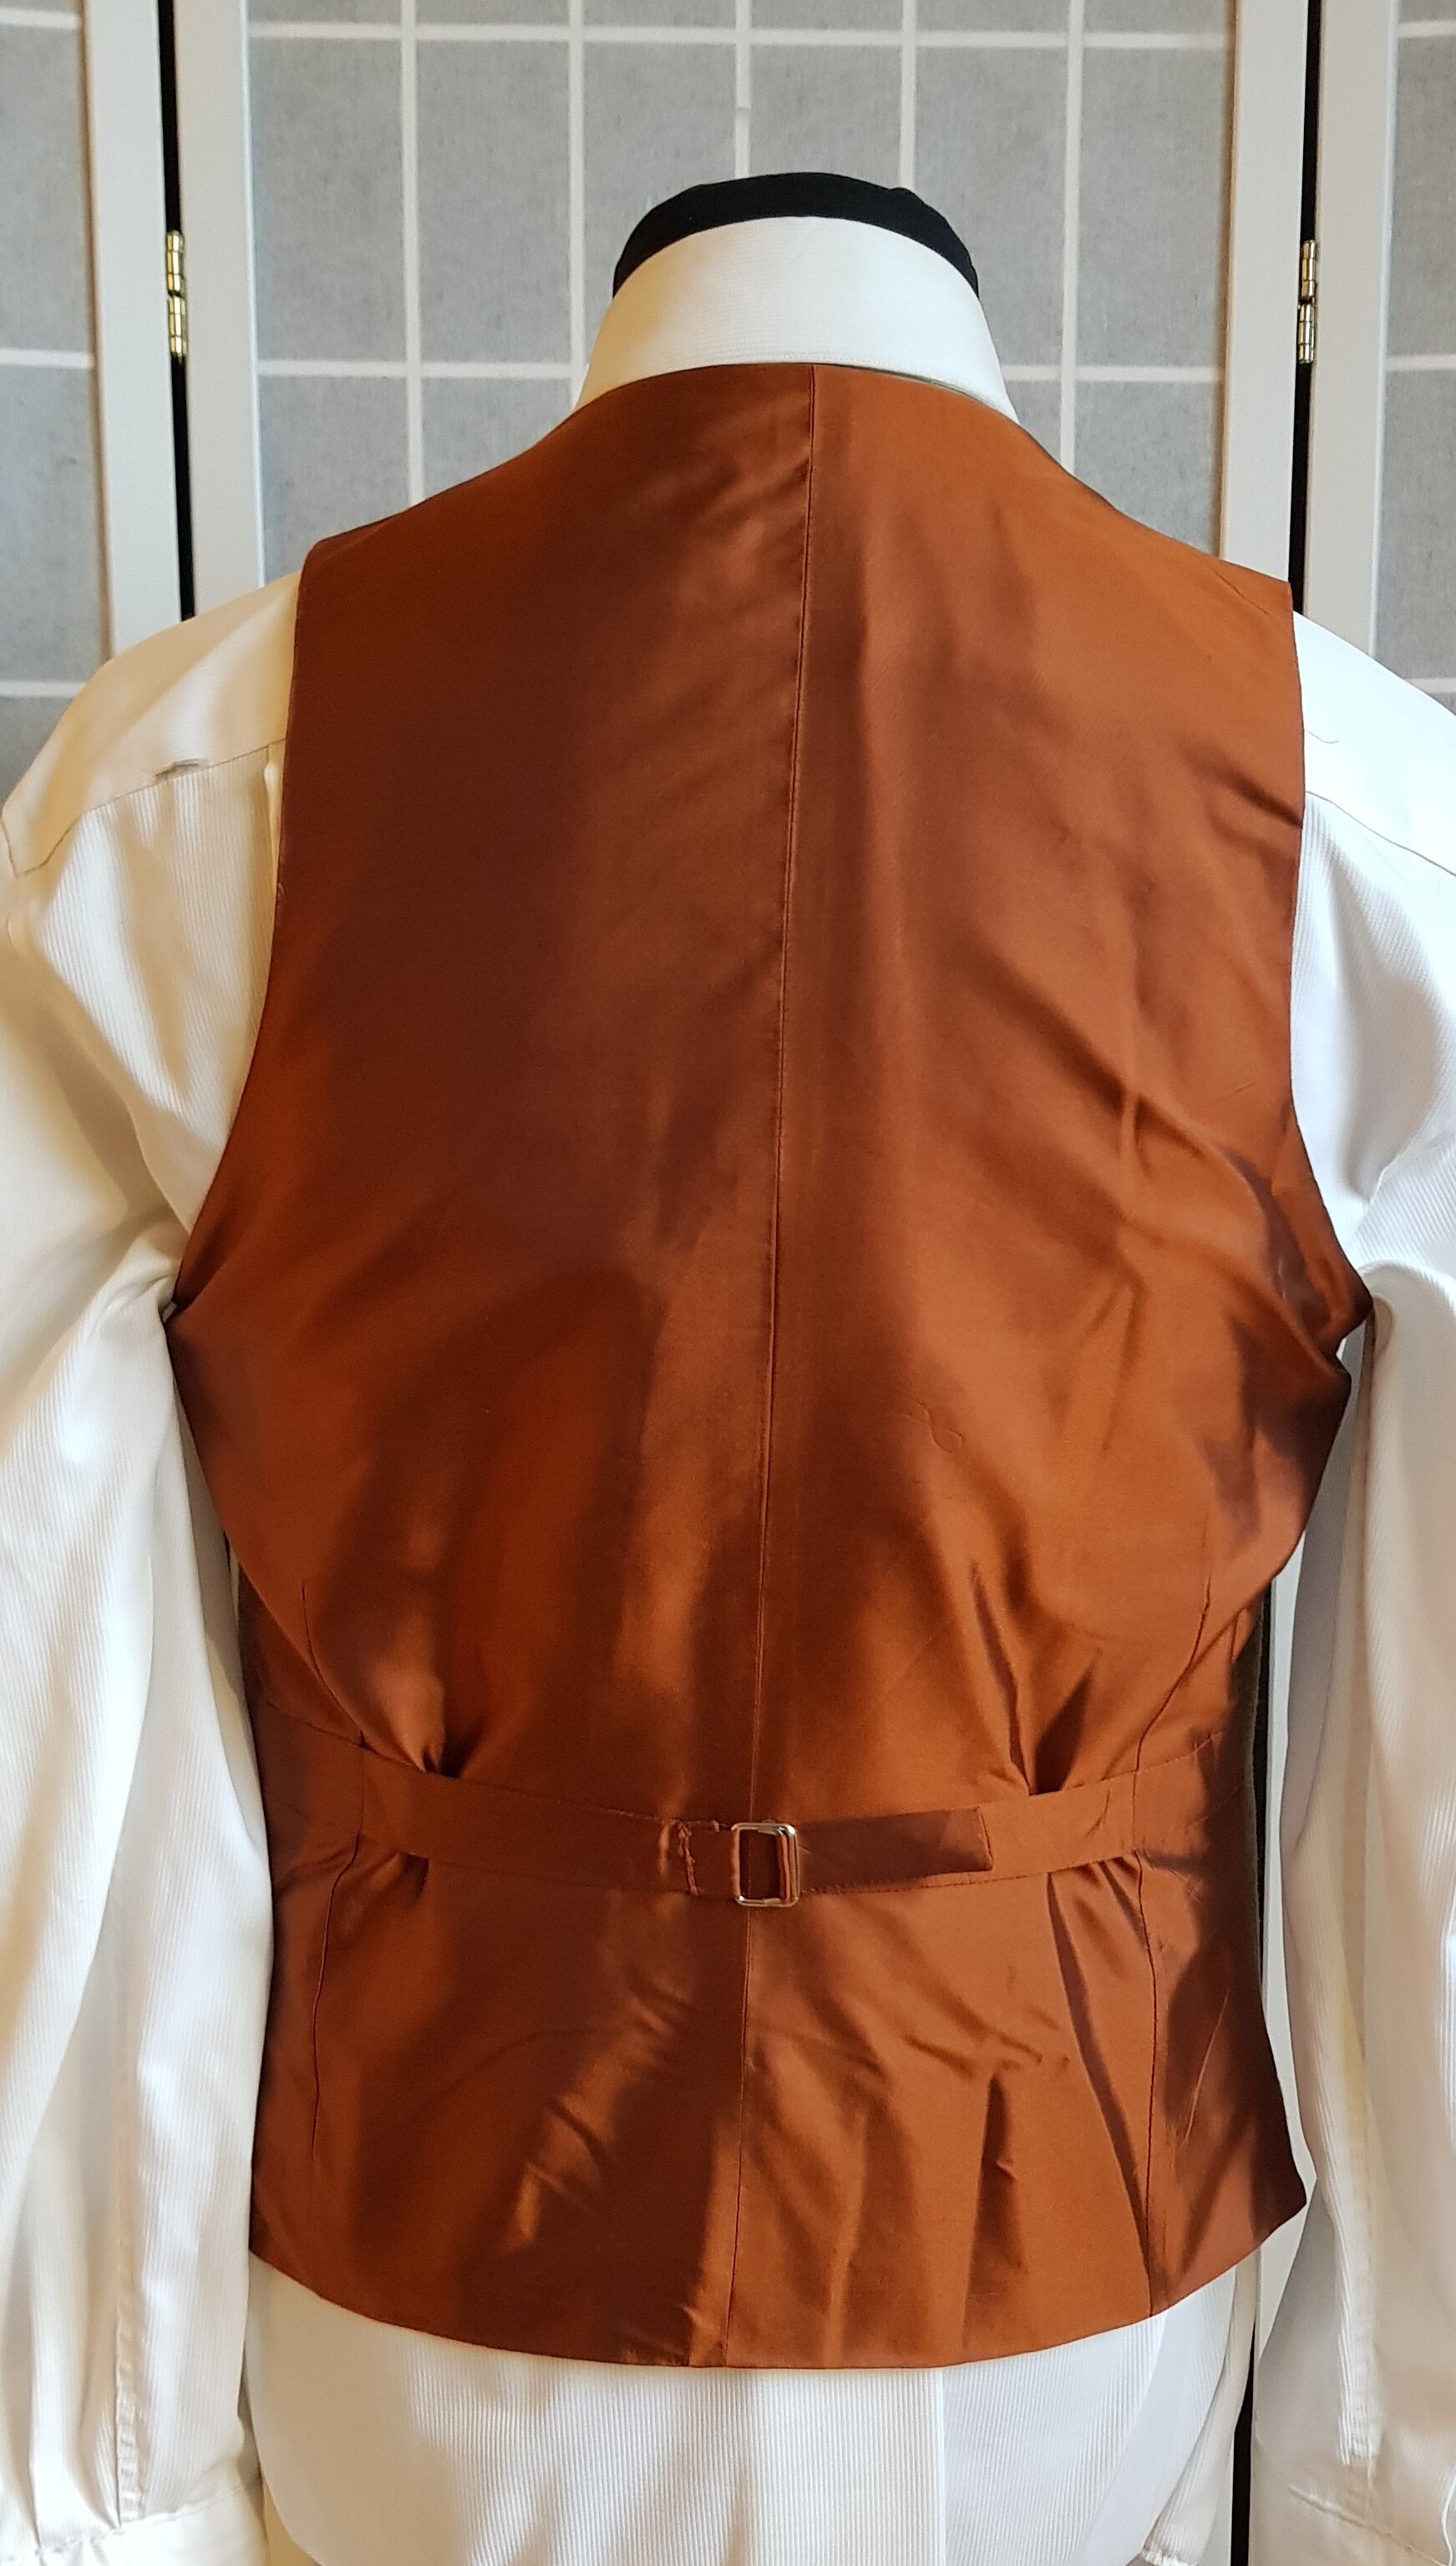 3 Piece Suit in Glenroyal Tweed (12).jpg